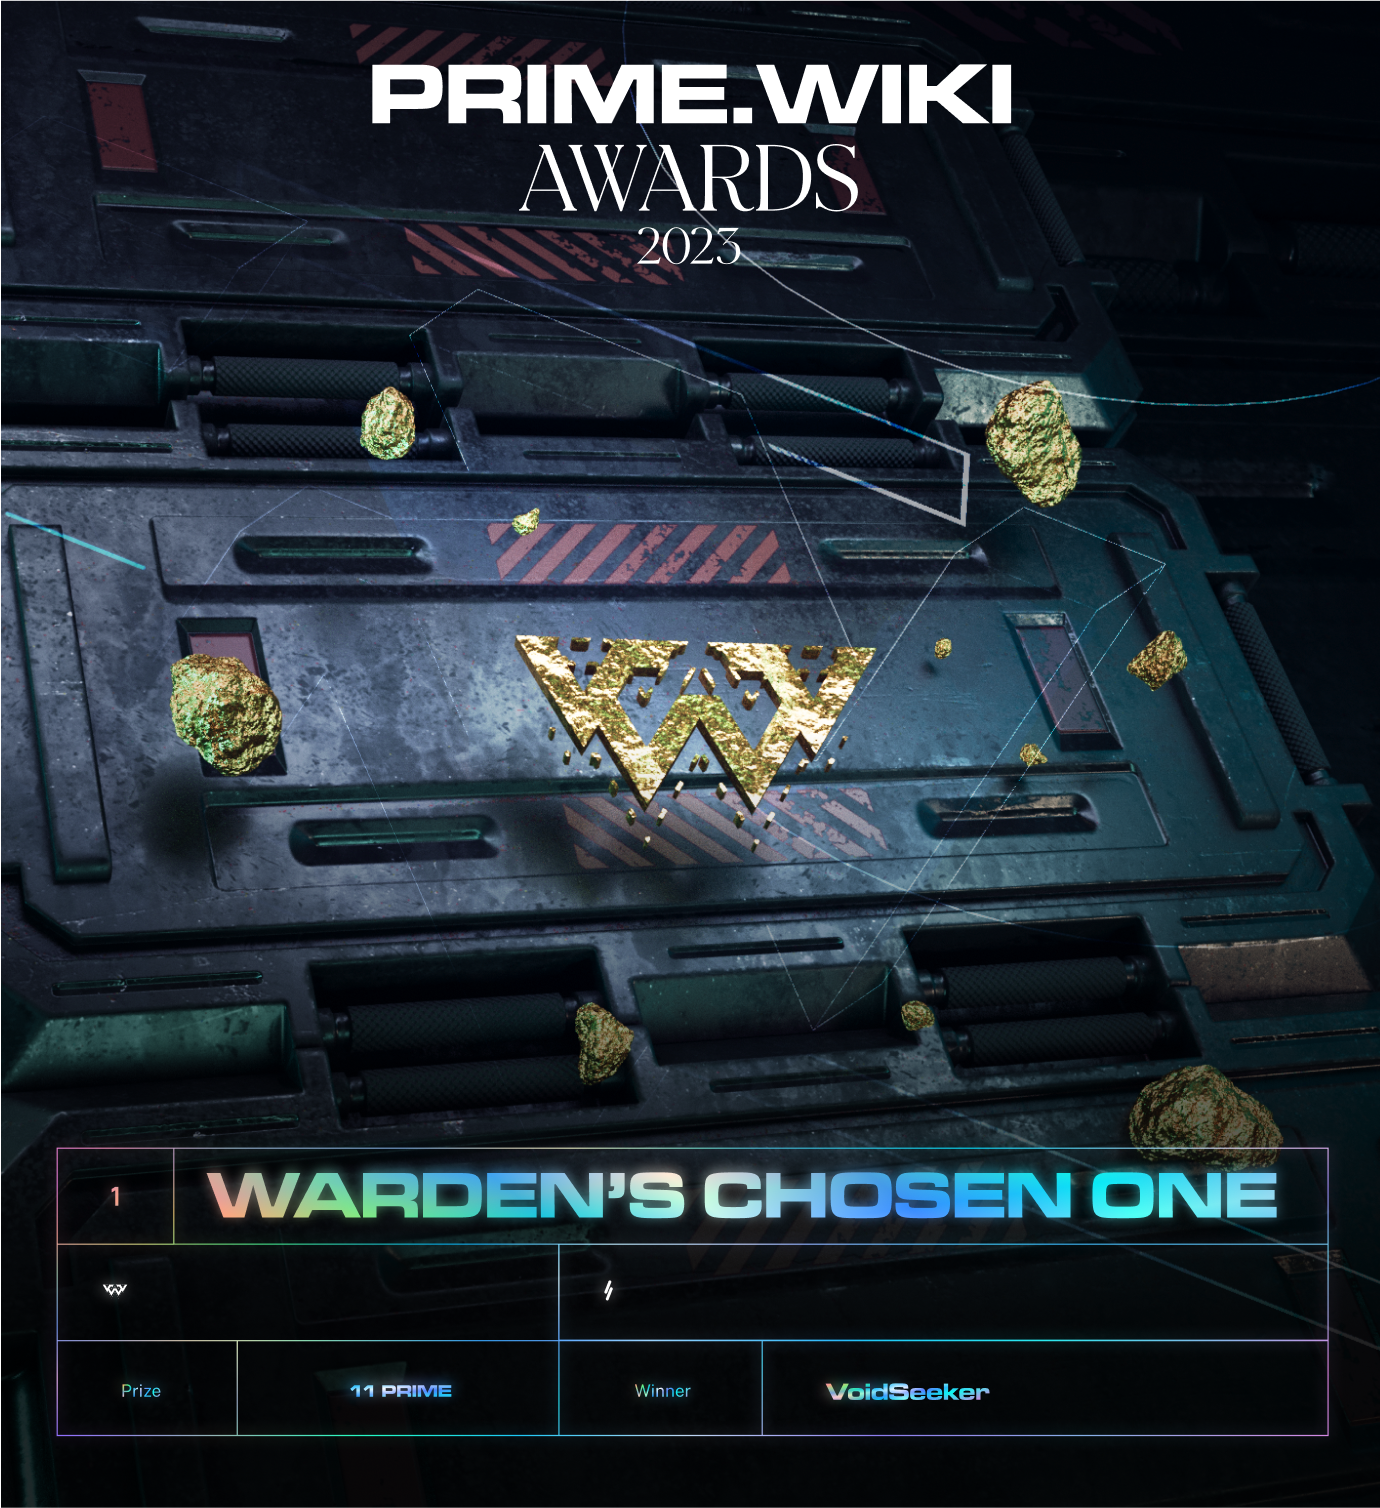 Warden's Chosen One